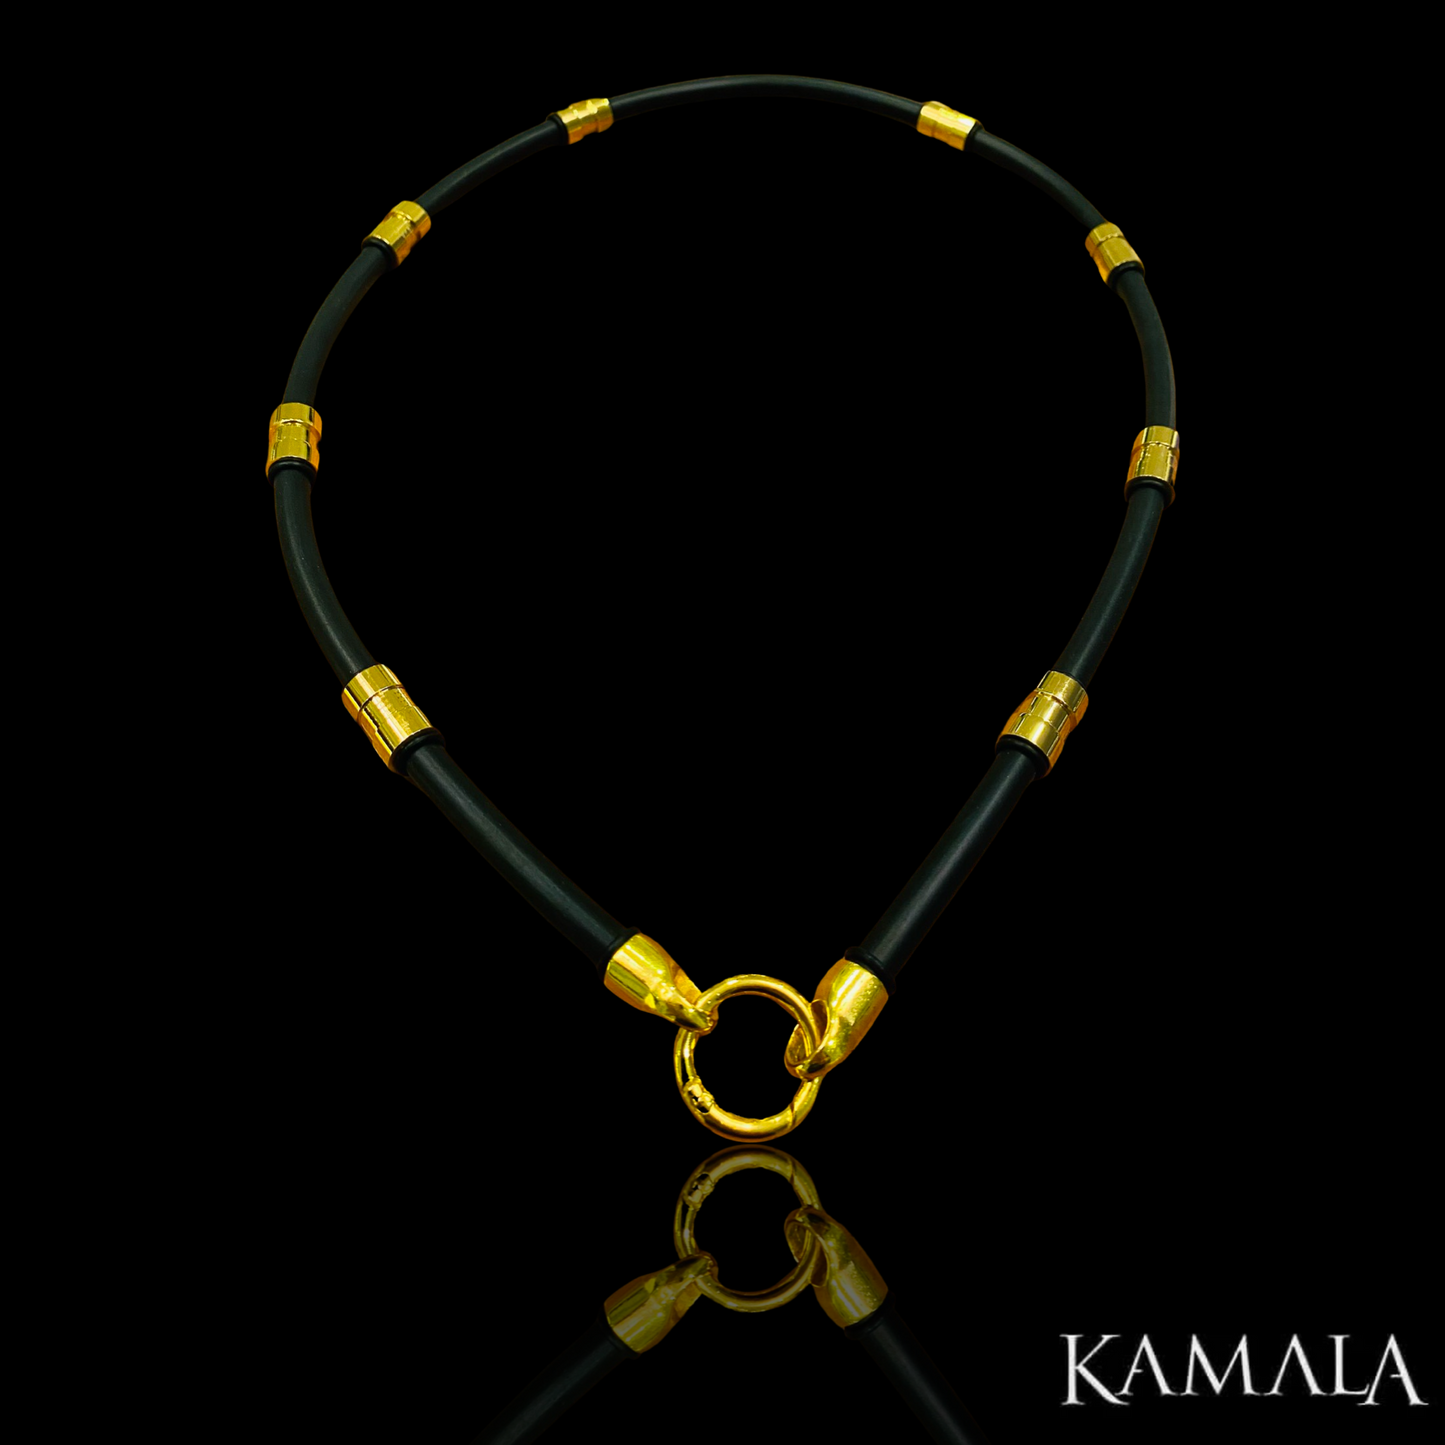 Schwarze Kautschuk Halskette mit Gold - Gambino Gold